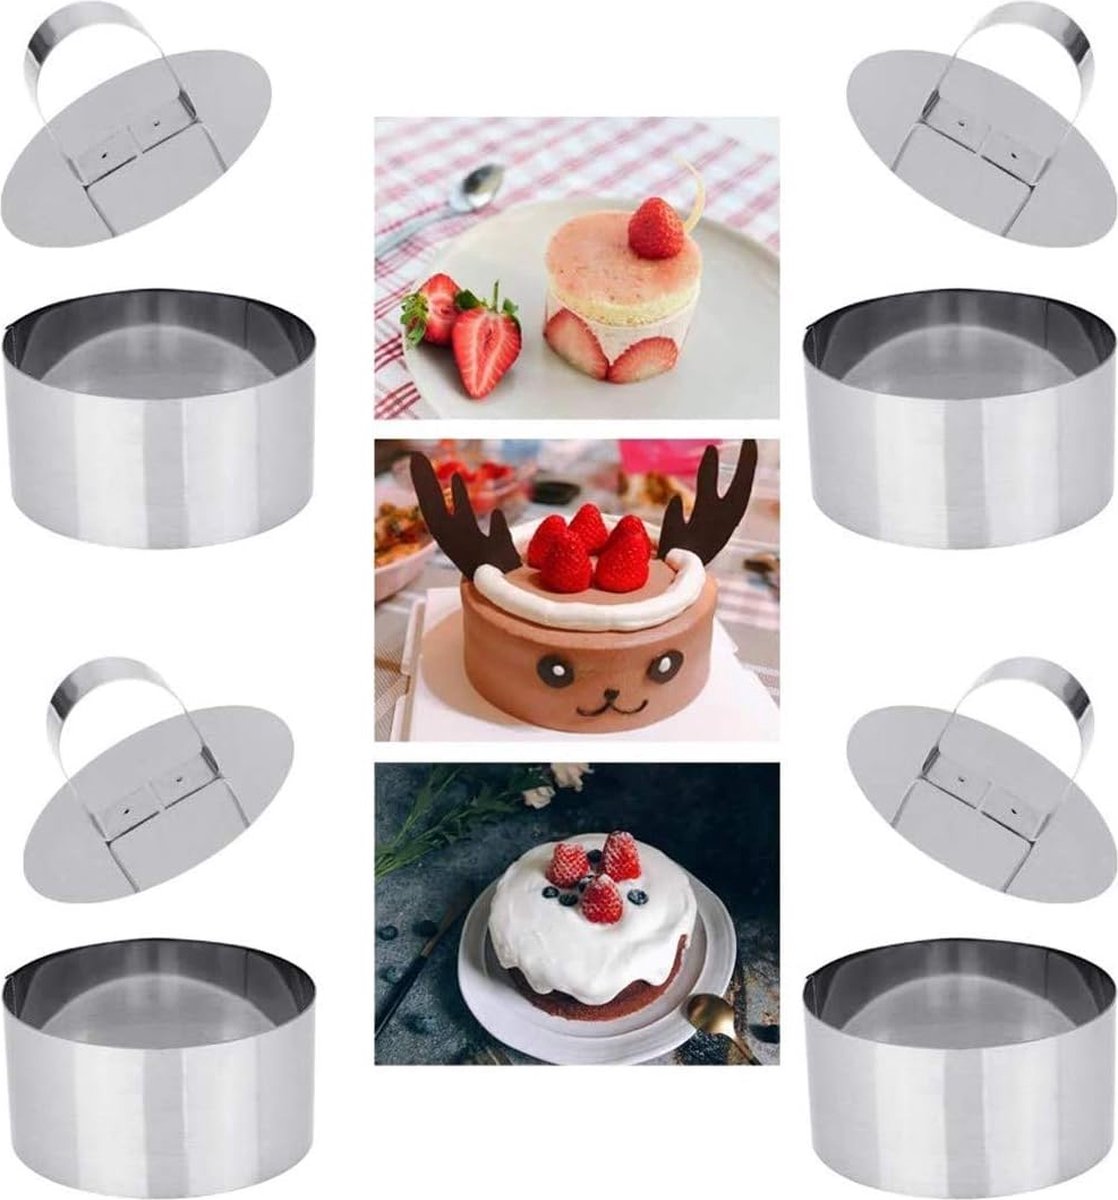 Eetringen roestvrijstalen dessertringen, kookringen, cakevorm, 4-delige set bevat 4 ringen en 4 voedselpersen